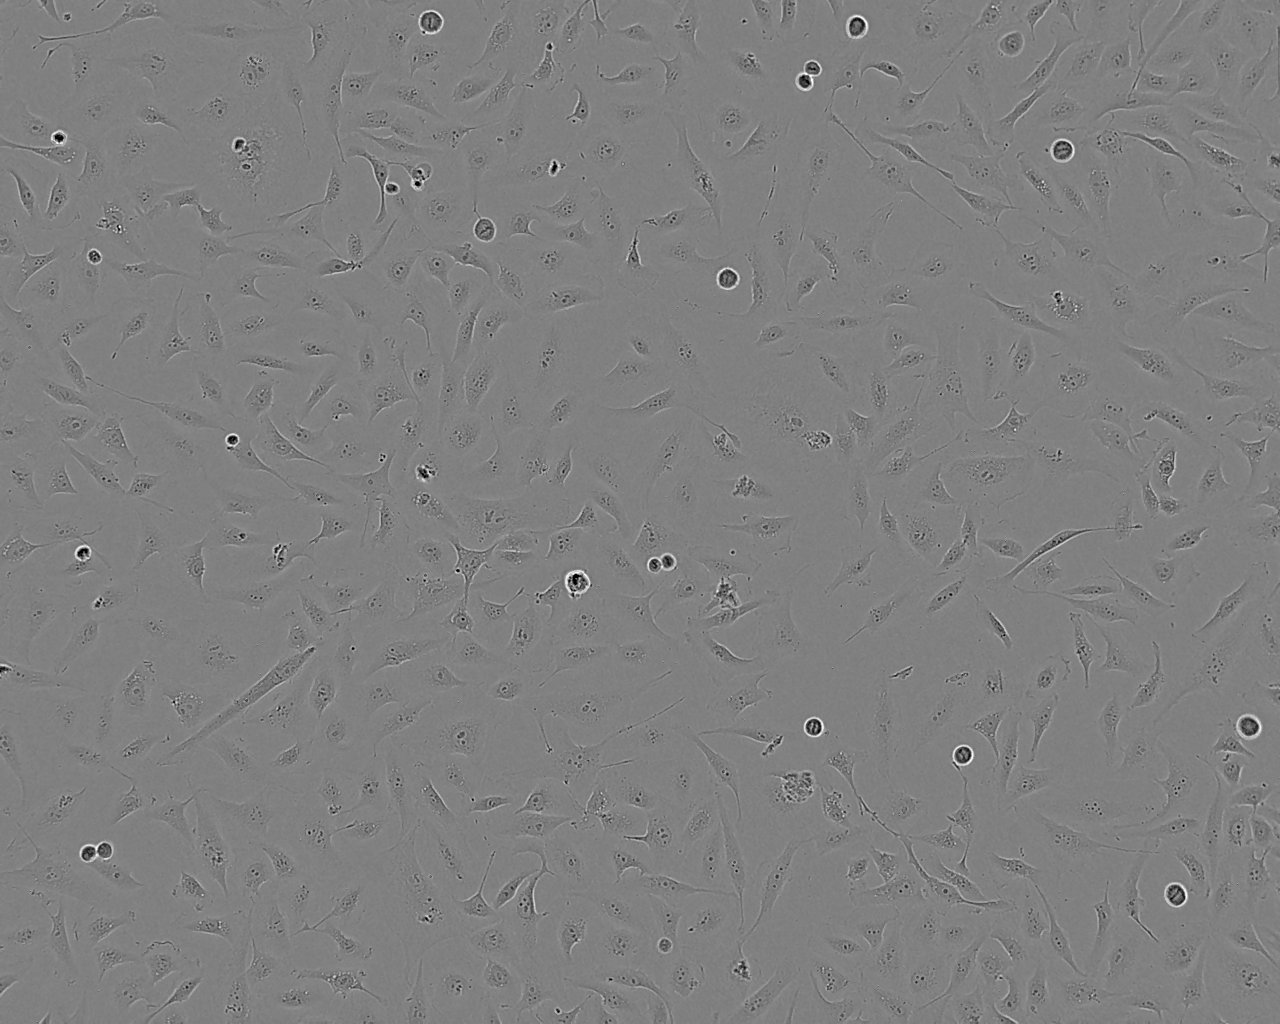 Panc02 epithelioid cells小鼠胰腺癌细胞系,Panc02 epithelioid cells